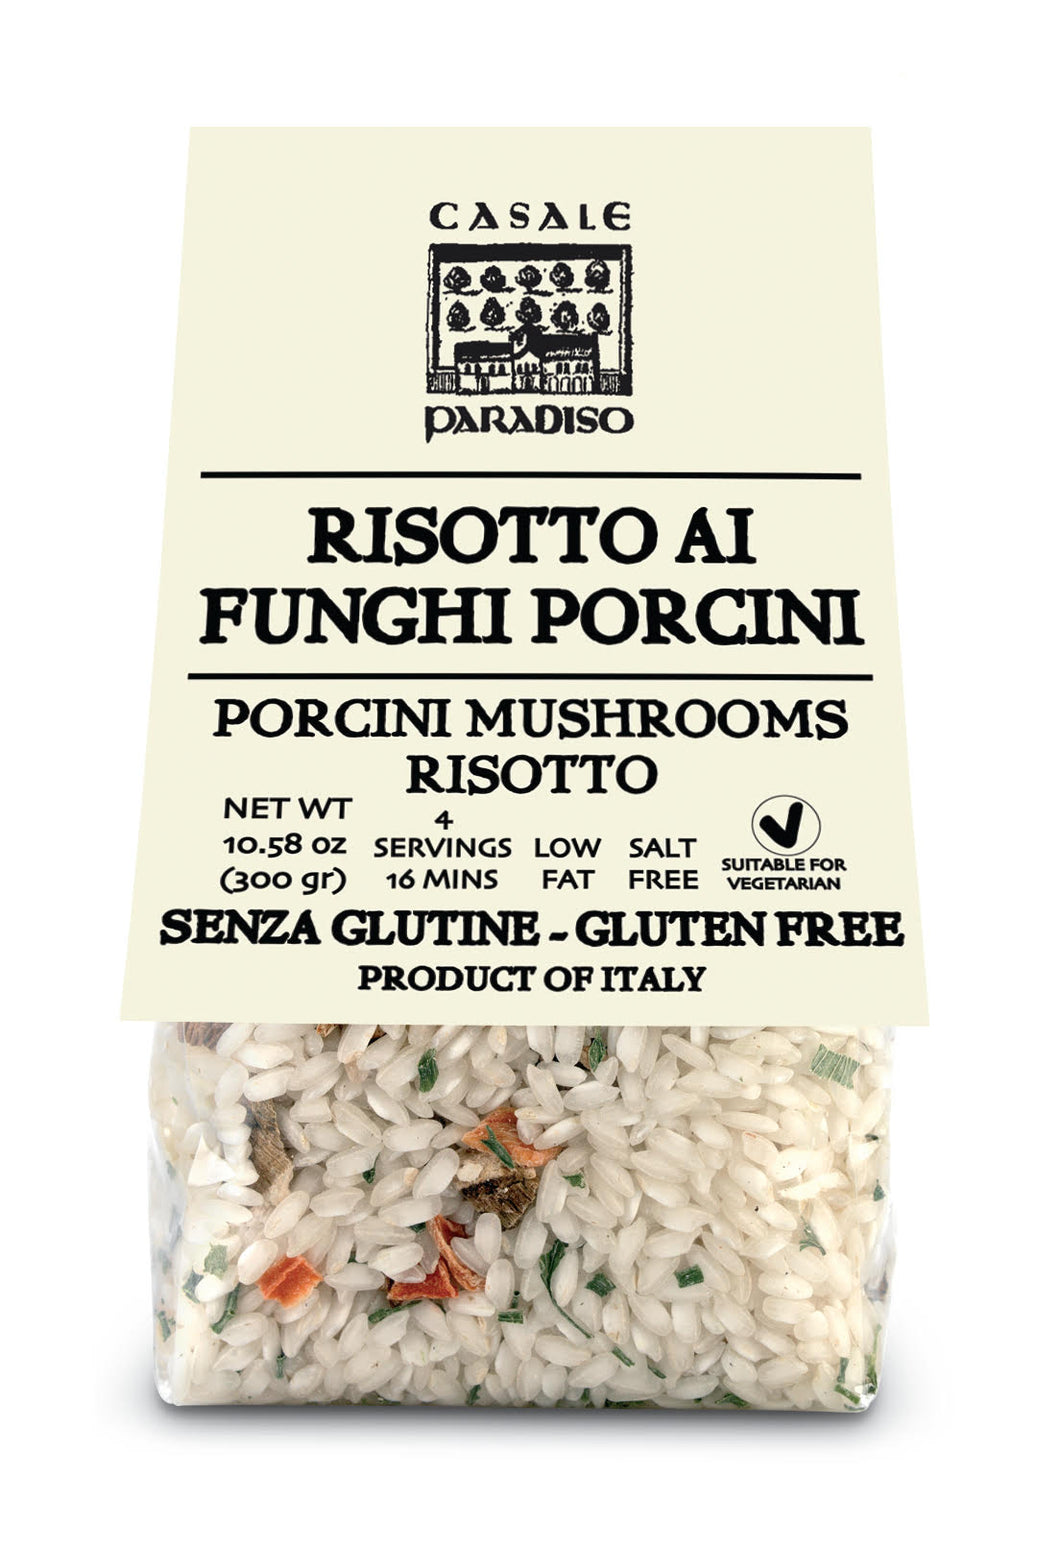 Risotto al Funghi Porcini -Risotto with Porcini Mushroom By Casale Paradiso